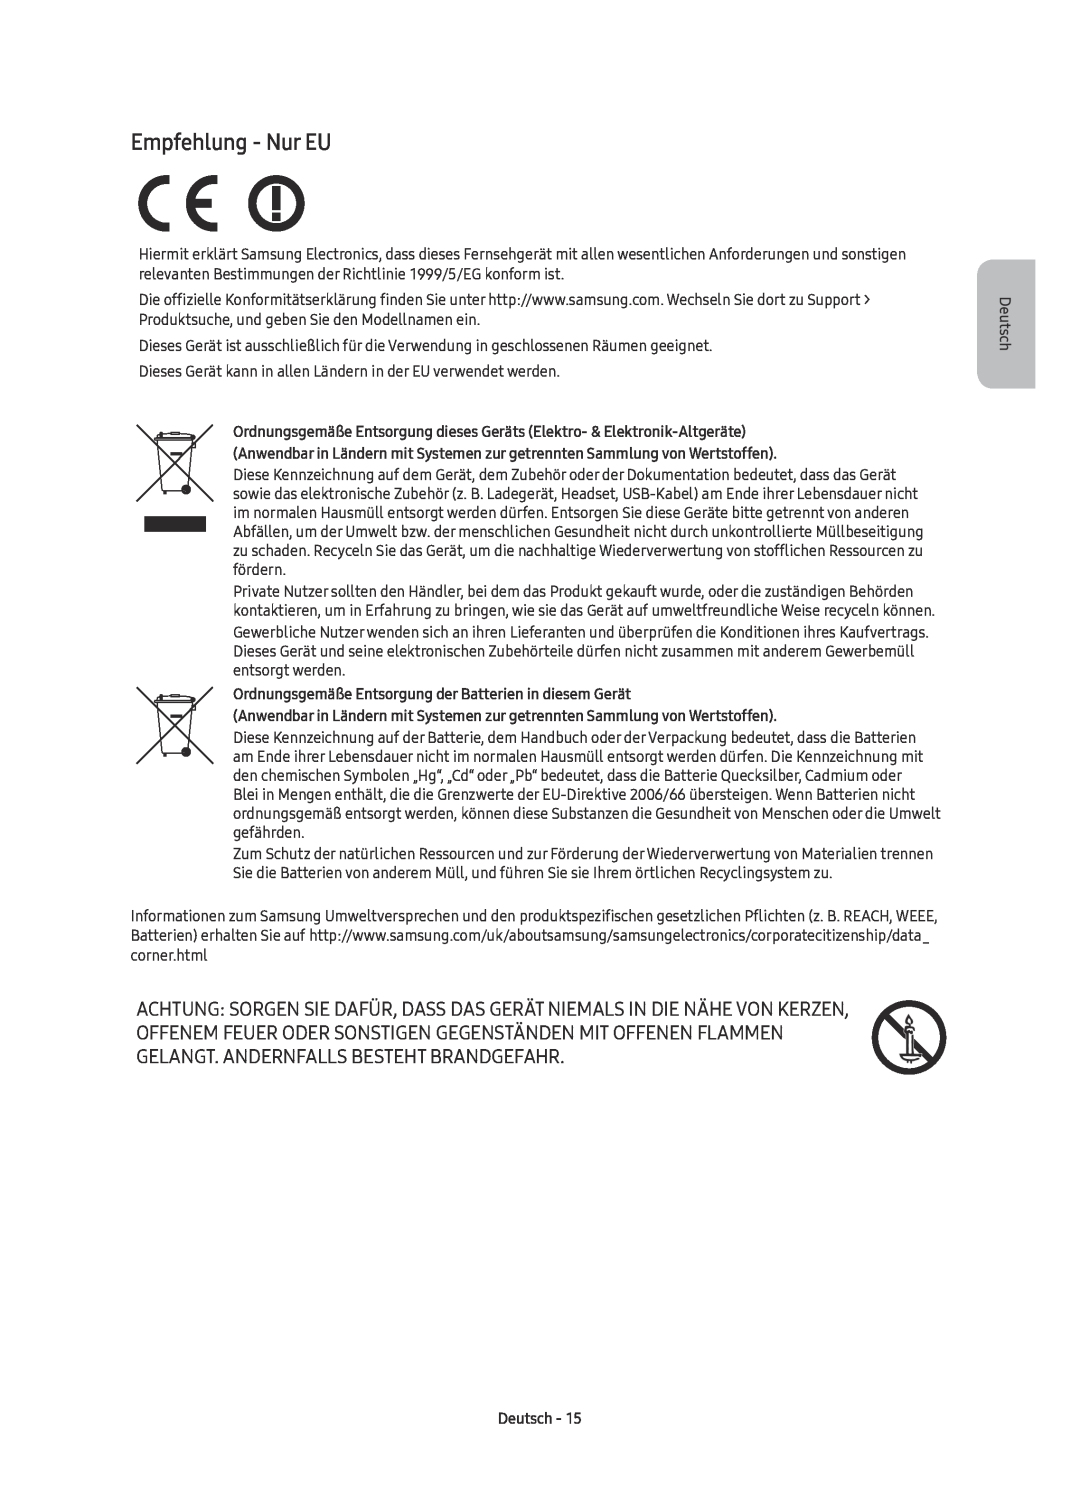 Samsung UE70KU6079UXZG manual Empfehlung - Nur EU, Ordnungsgemäße Entsorgung der Batterien in diesem Gerät, Deutsch 